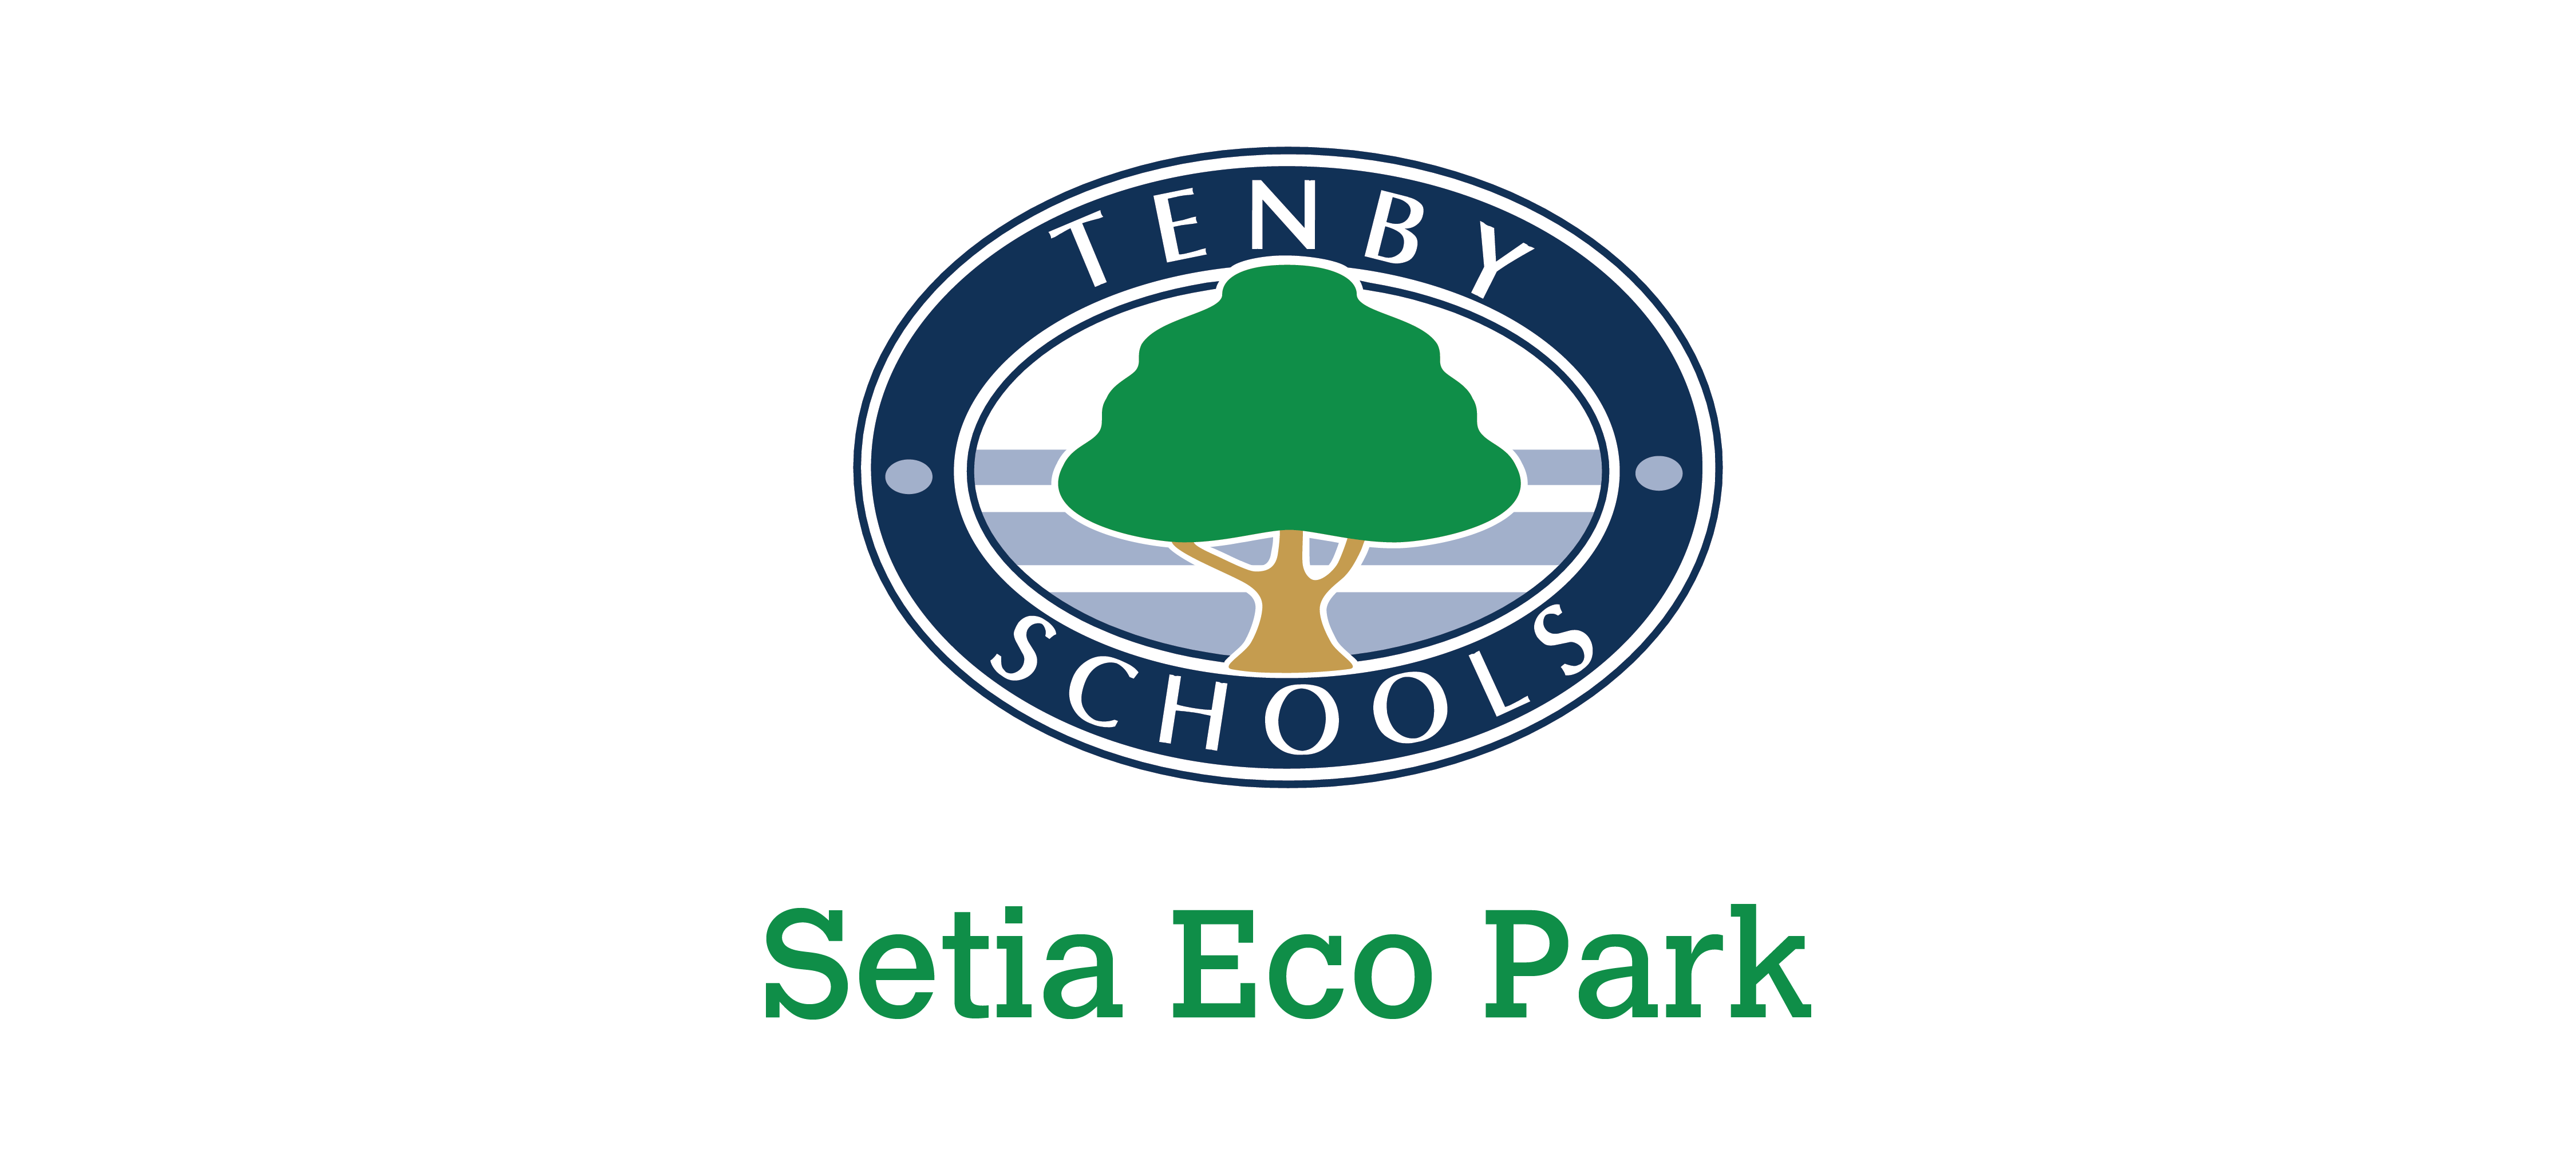 Tenby Schools Setia Eco Park-01